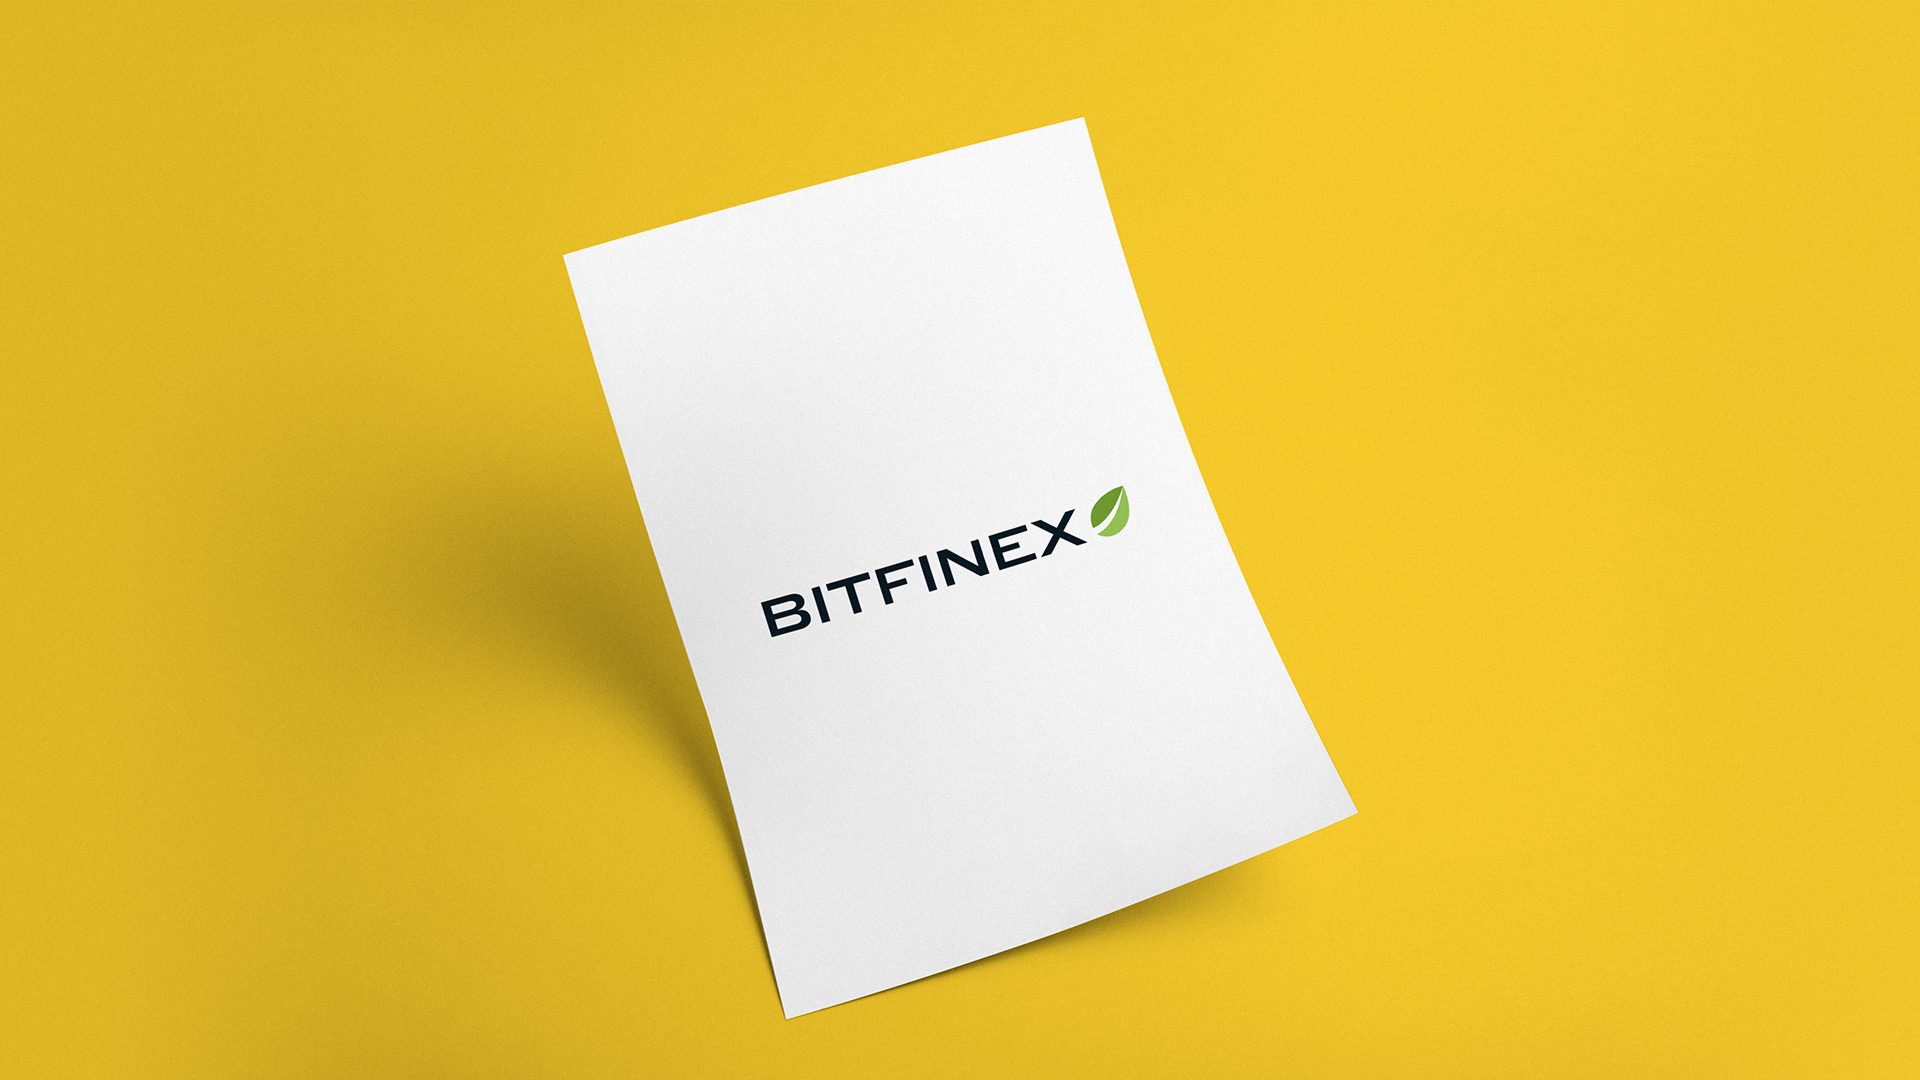 Giám đốc Công nghệ xác nhận Bitfinex đã hoàn tất vòng gọi vốn tư nhân 1 tỉ USD cho token LEO